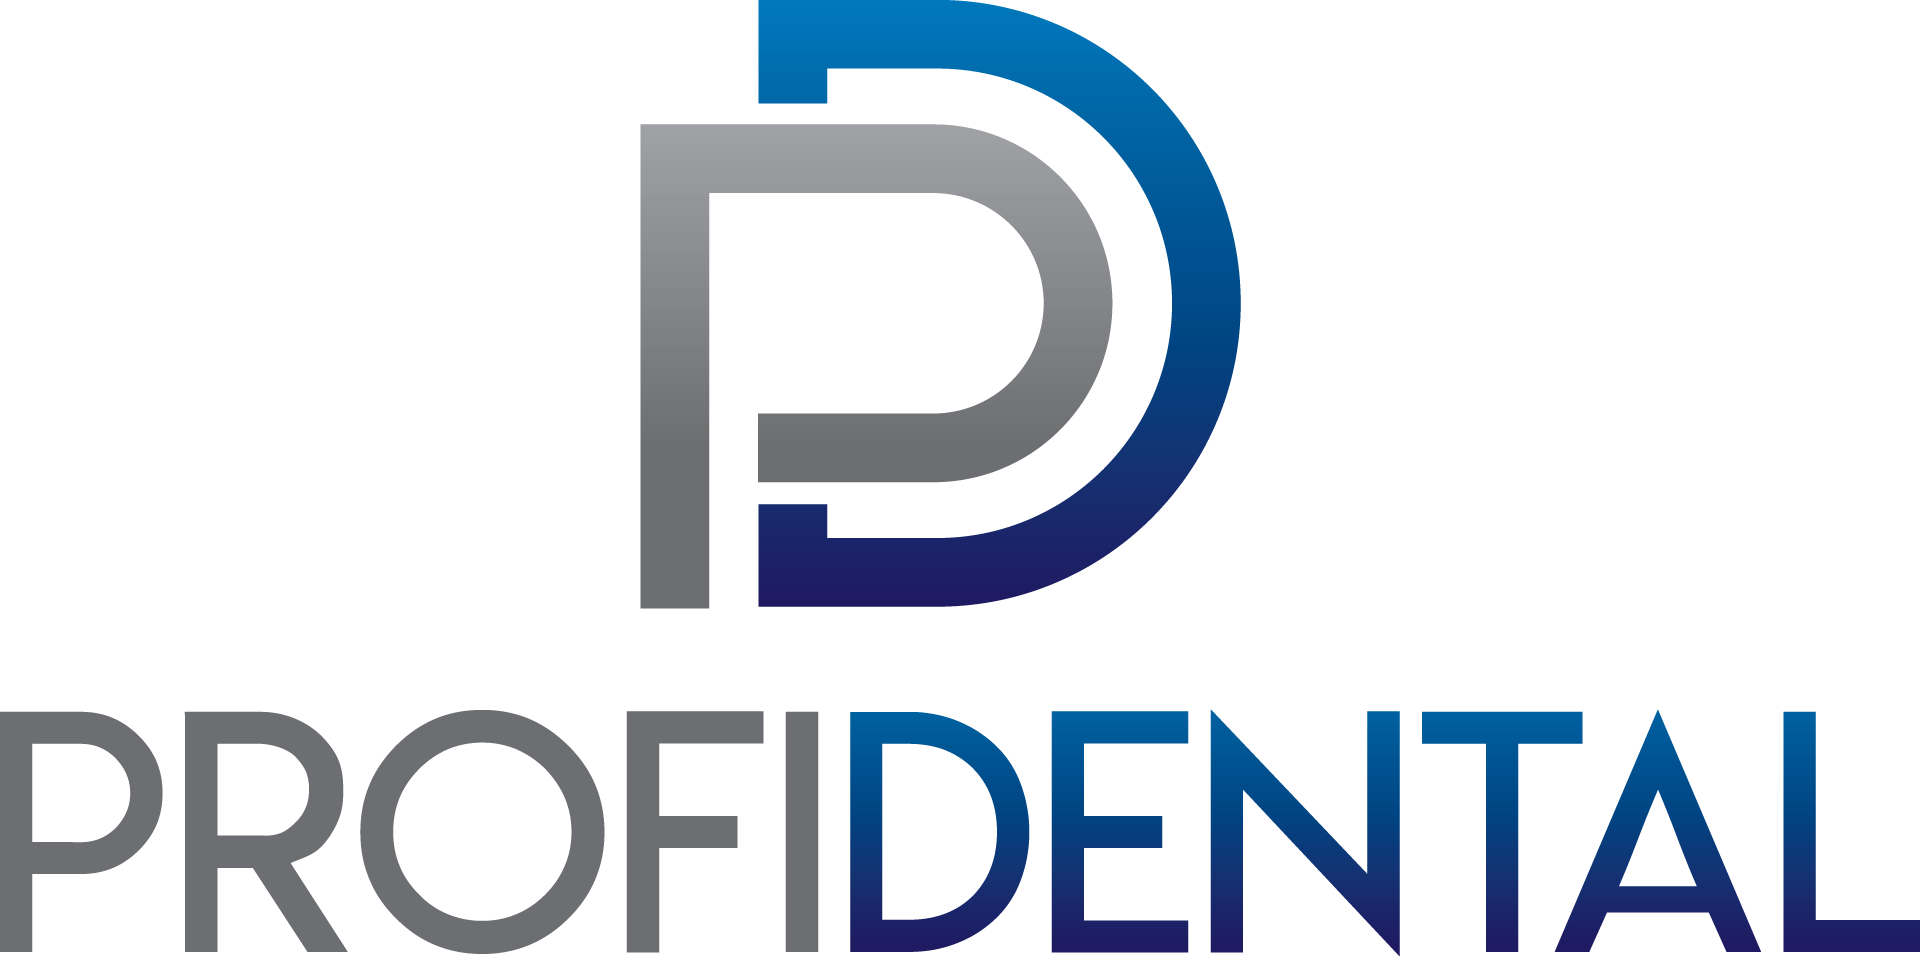 logo PD